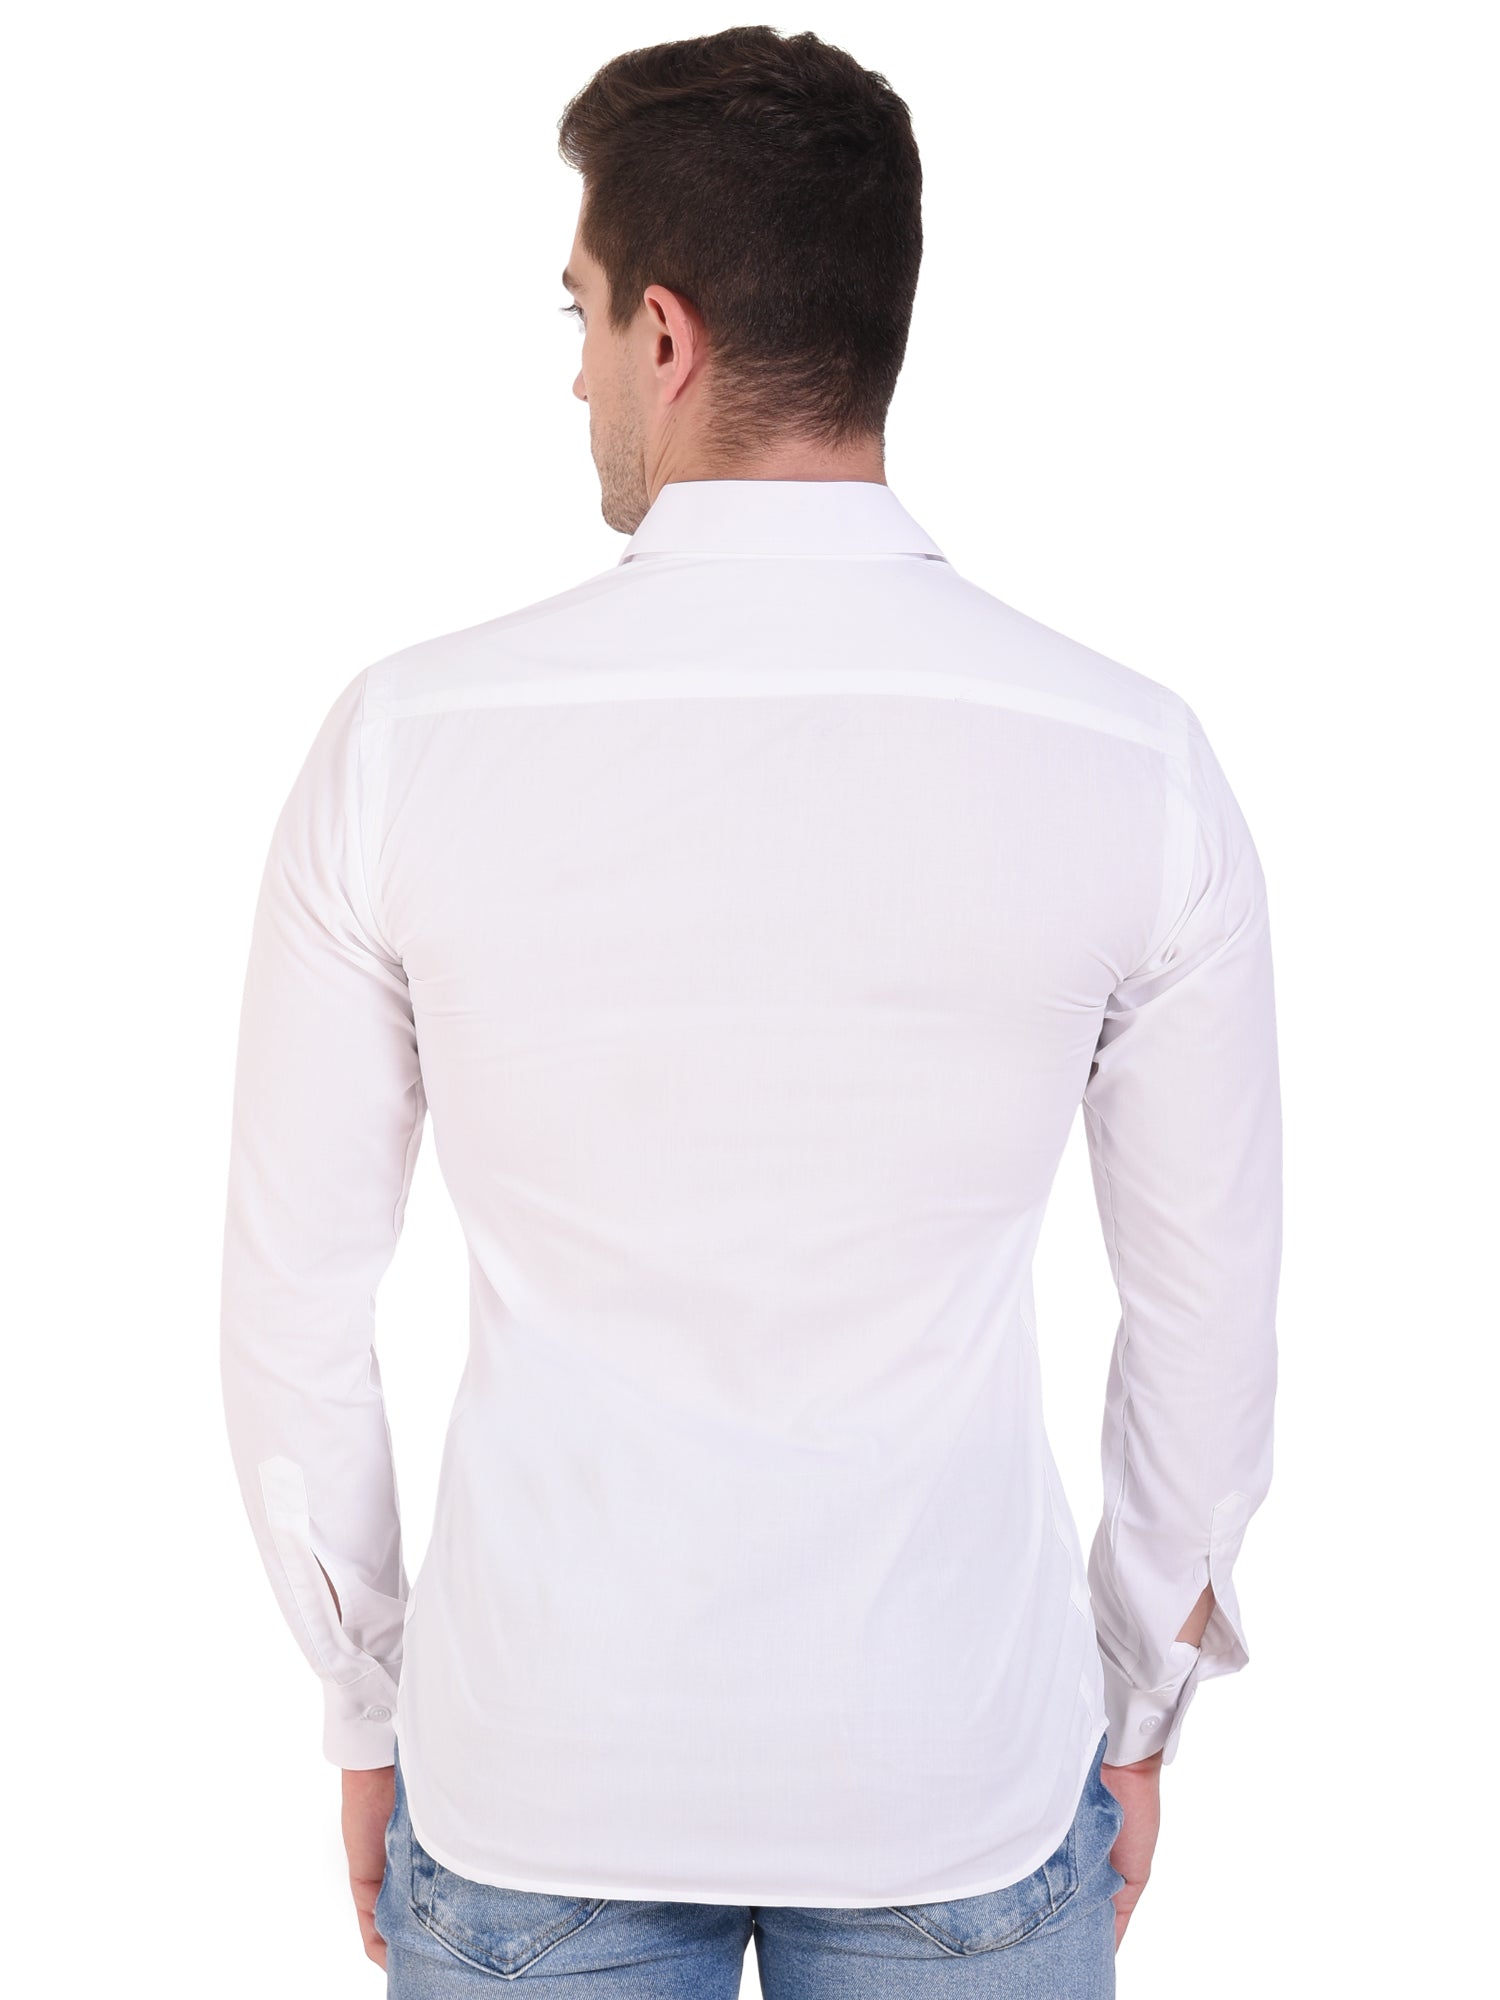 The Pure White Shirt – Autouniform.com